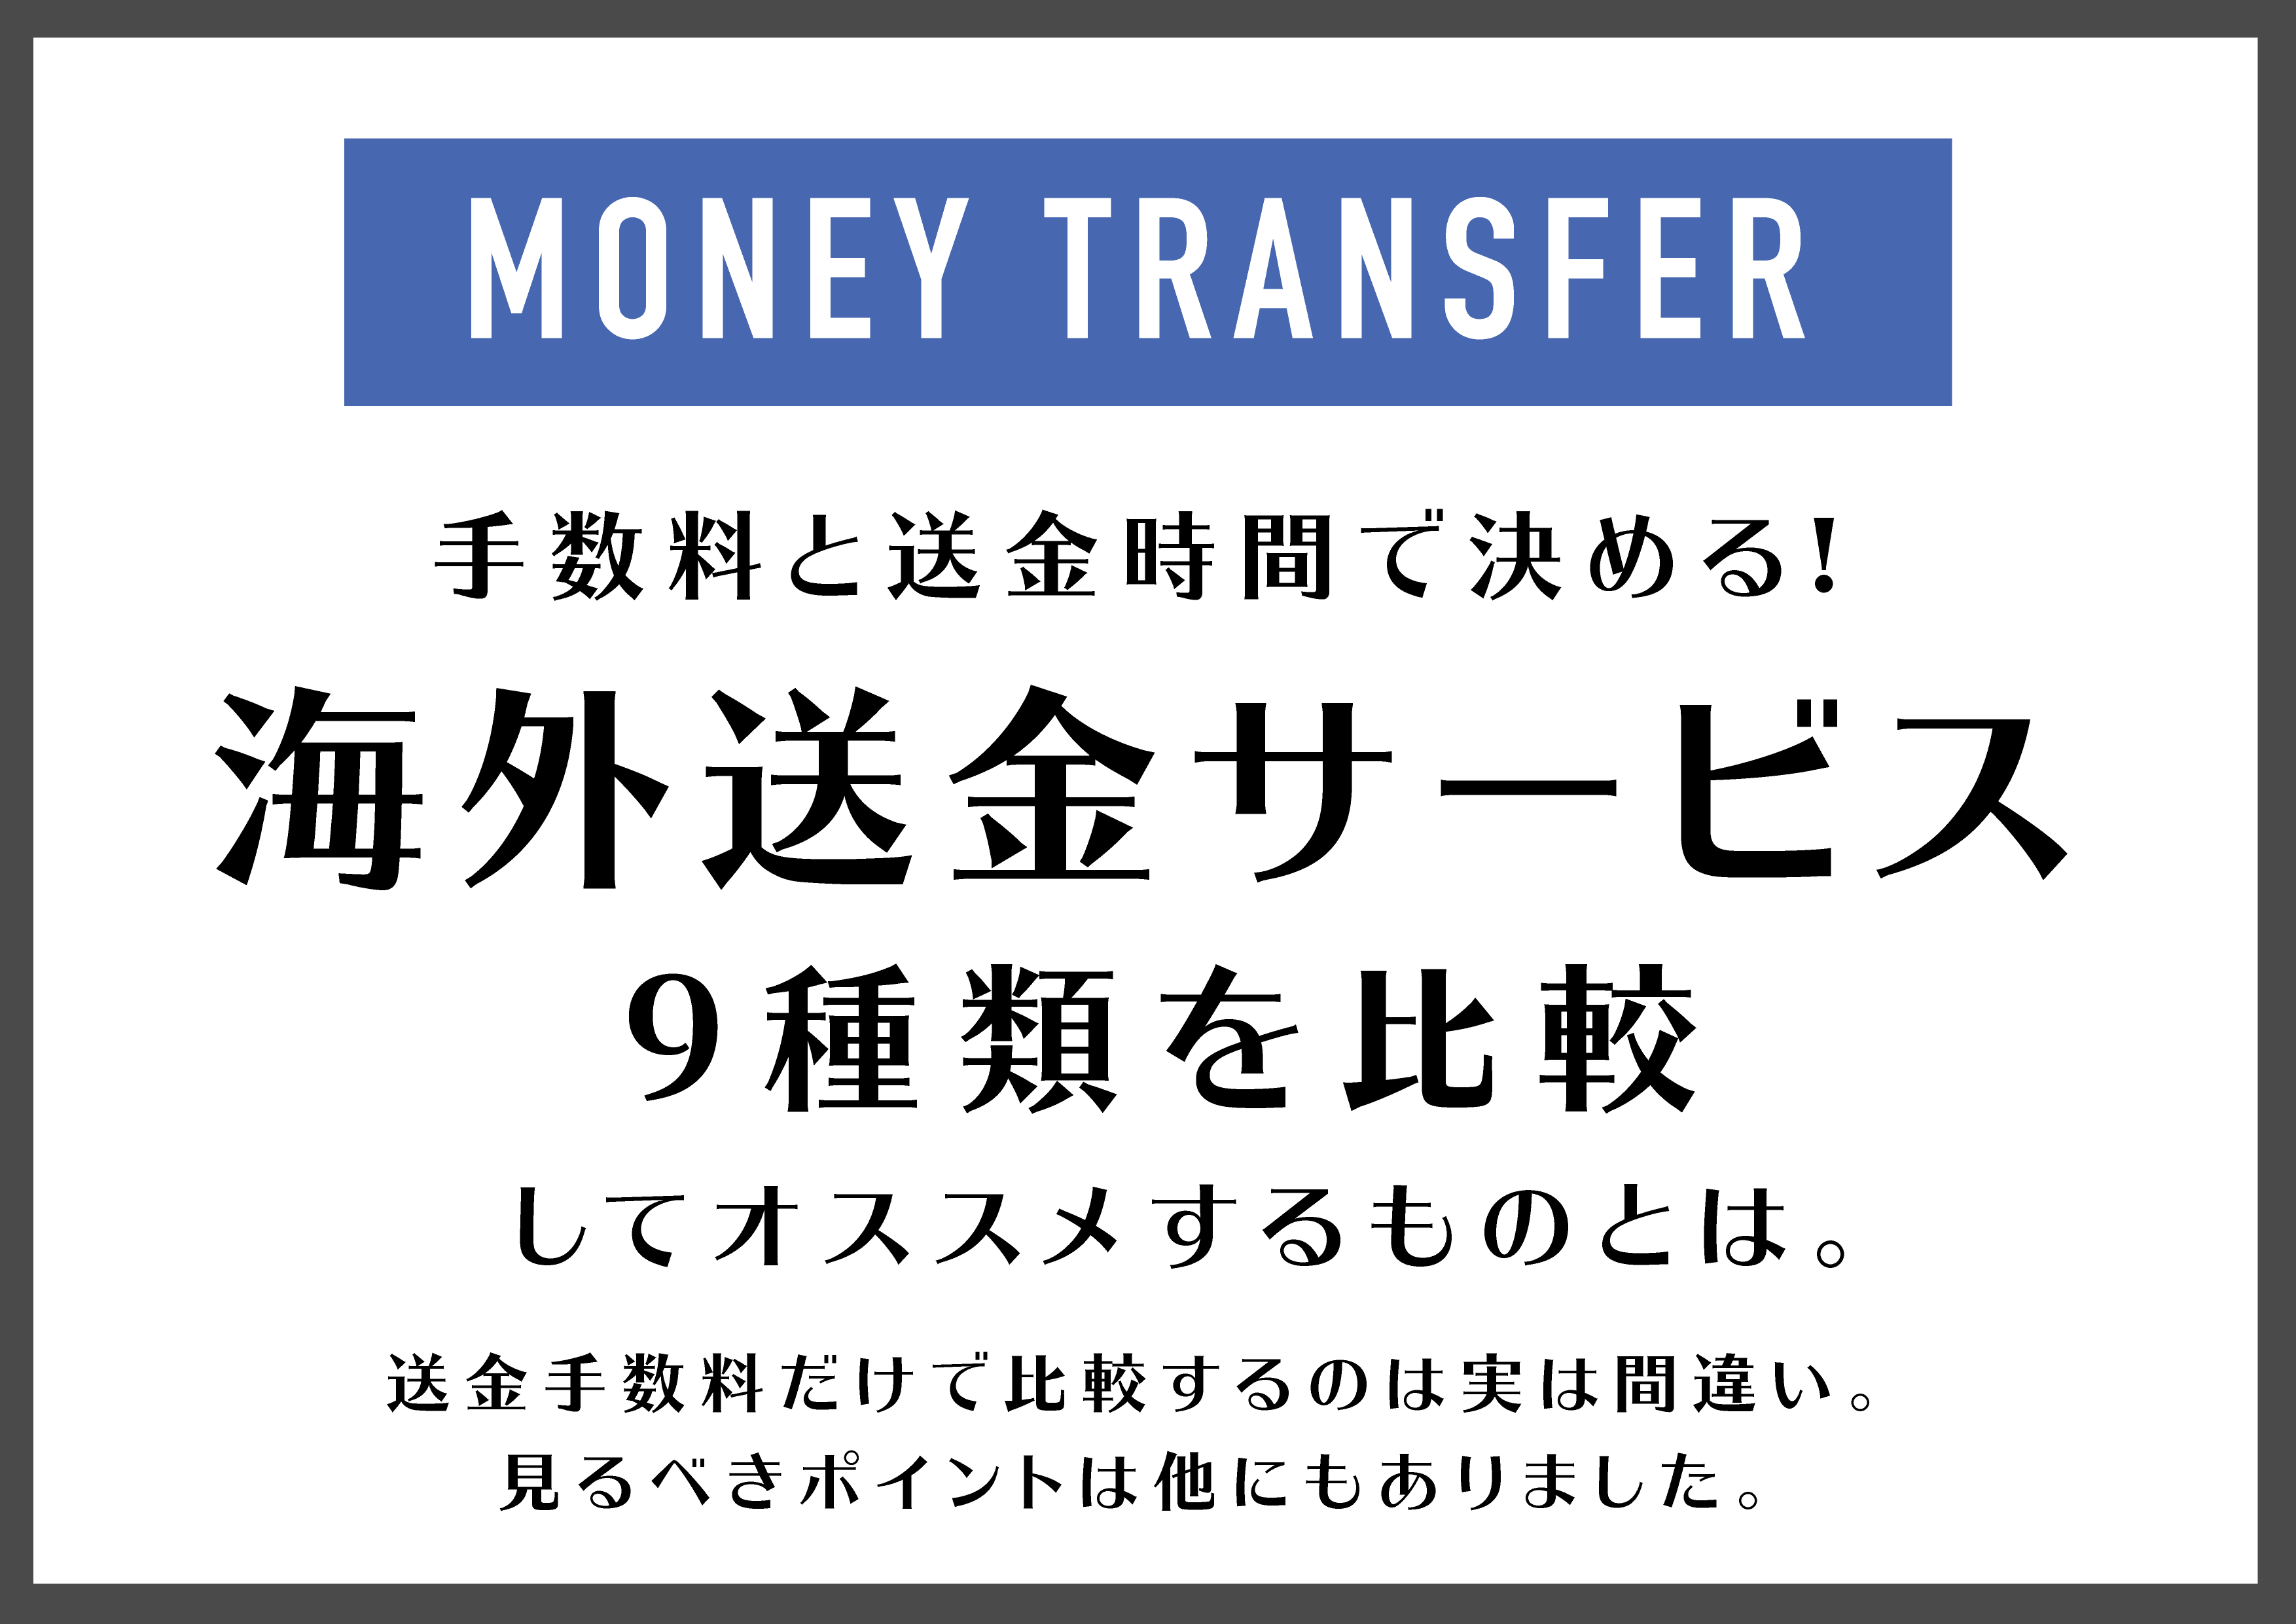 moneyTransfer 01